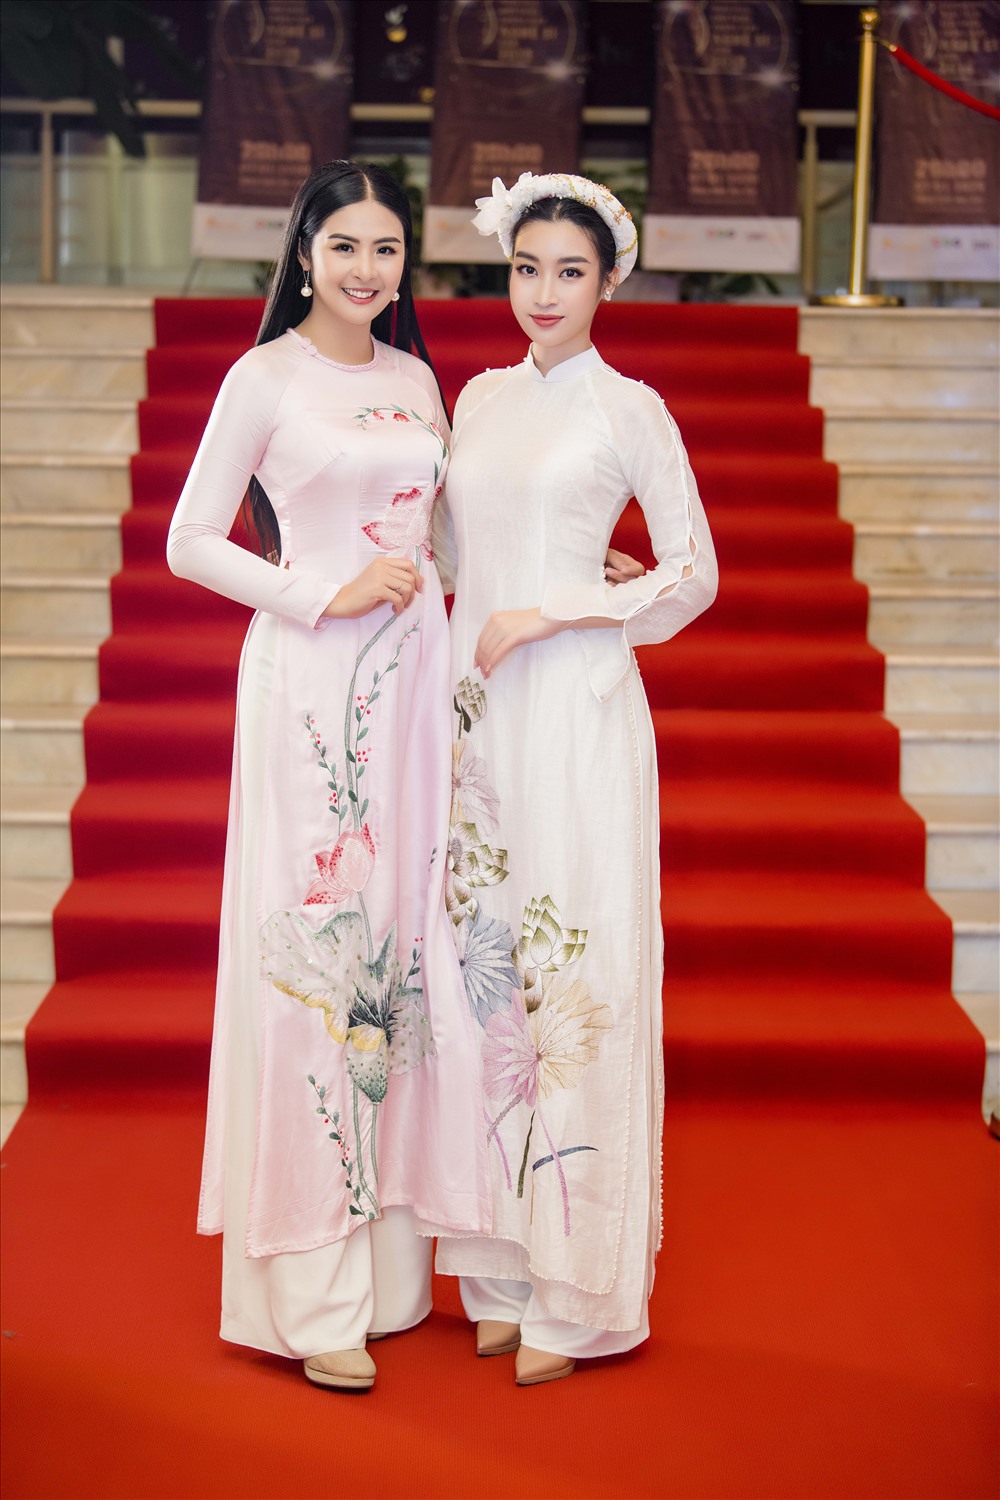 Cùng bước ra từ cuộc thi Hoa hậu Việt Nam, Ngọc Hân và Đỗ Mỹ Linh là những nàng hậu nhận được nhiều yêu mến của khán giả từ sau khi đăng quang đến nay. Ảnh: Như Hoàn.